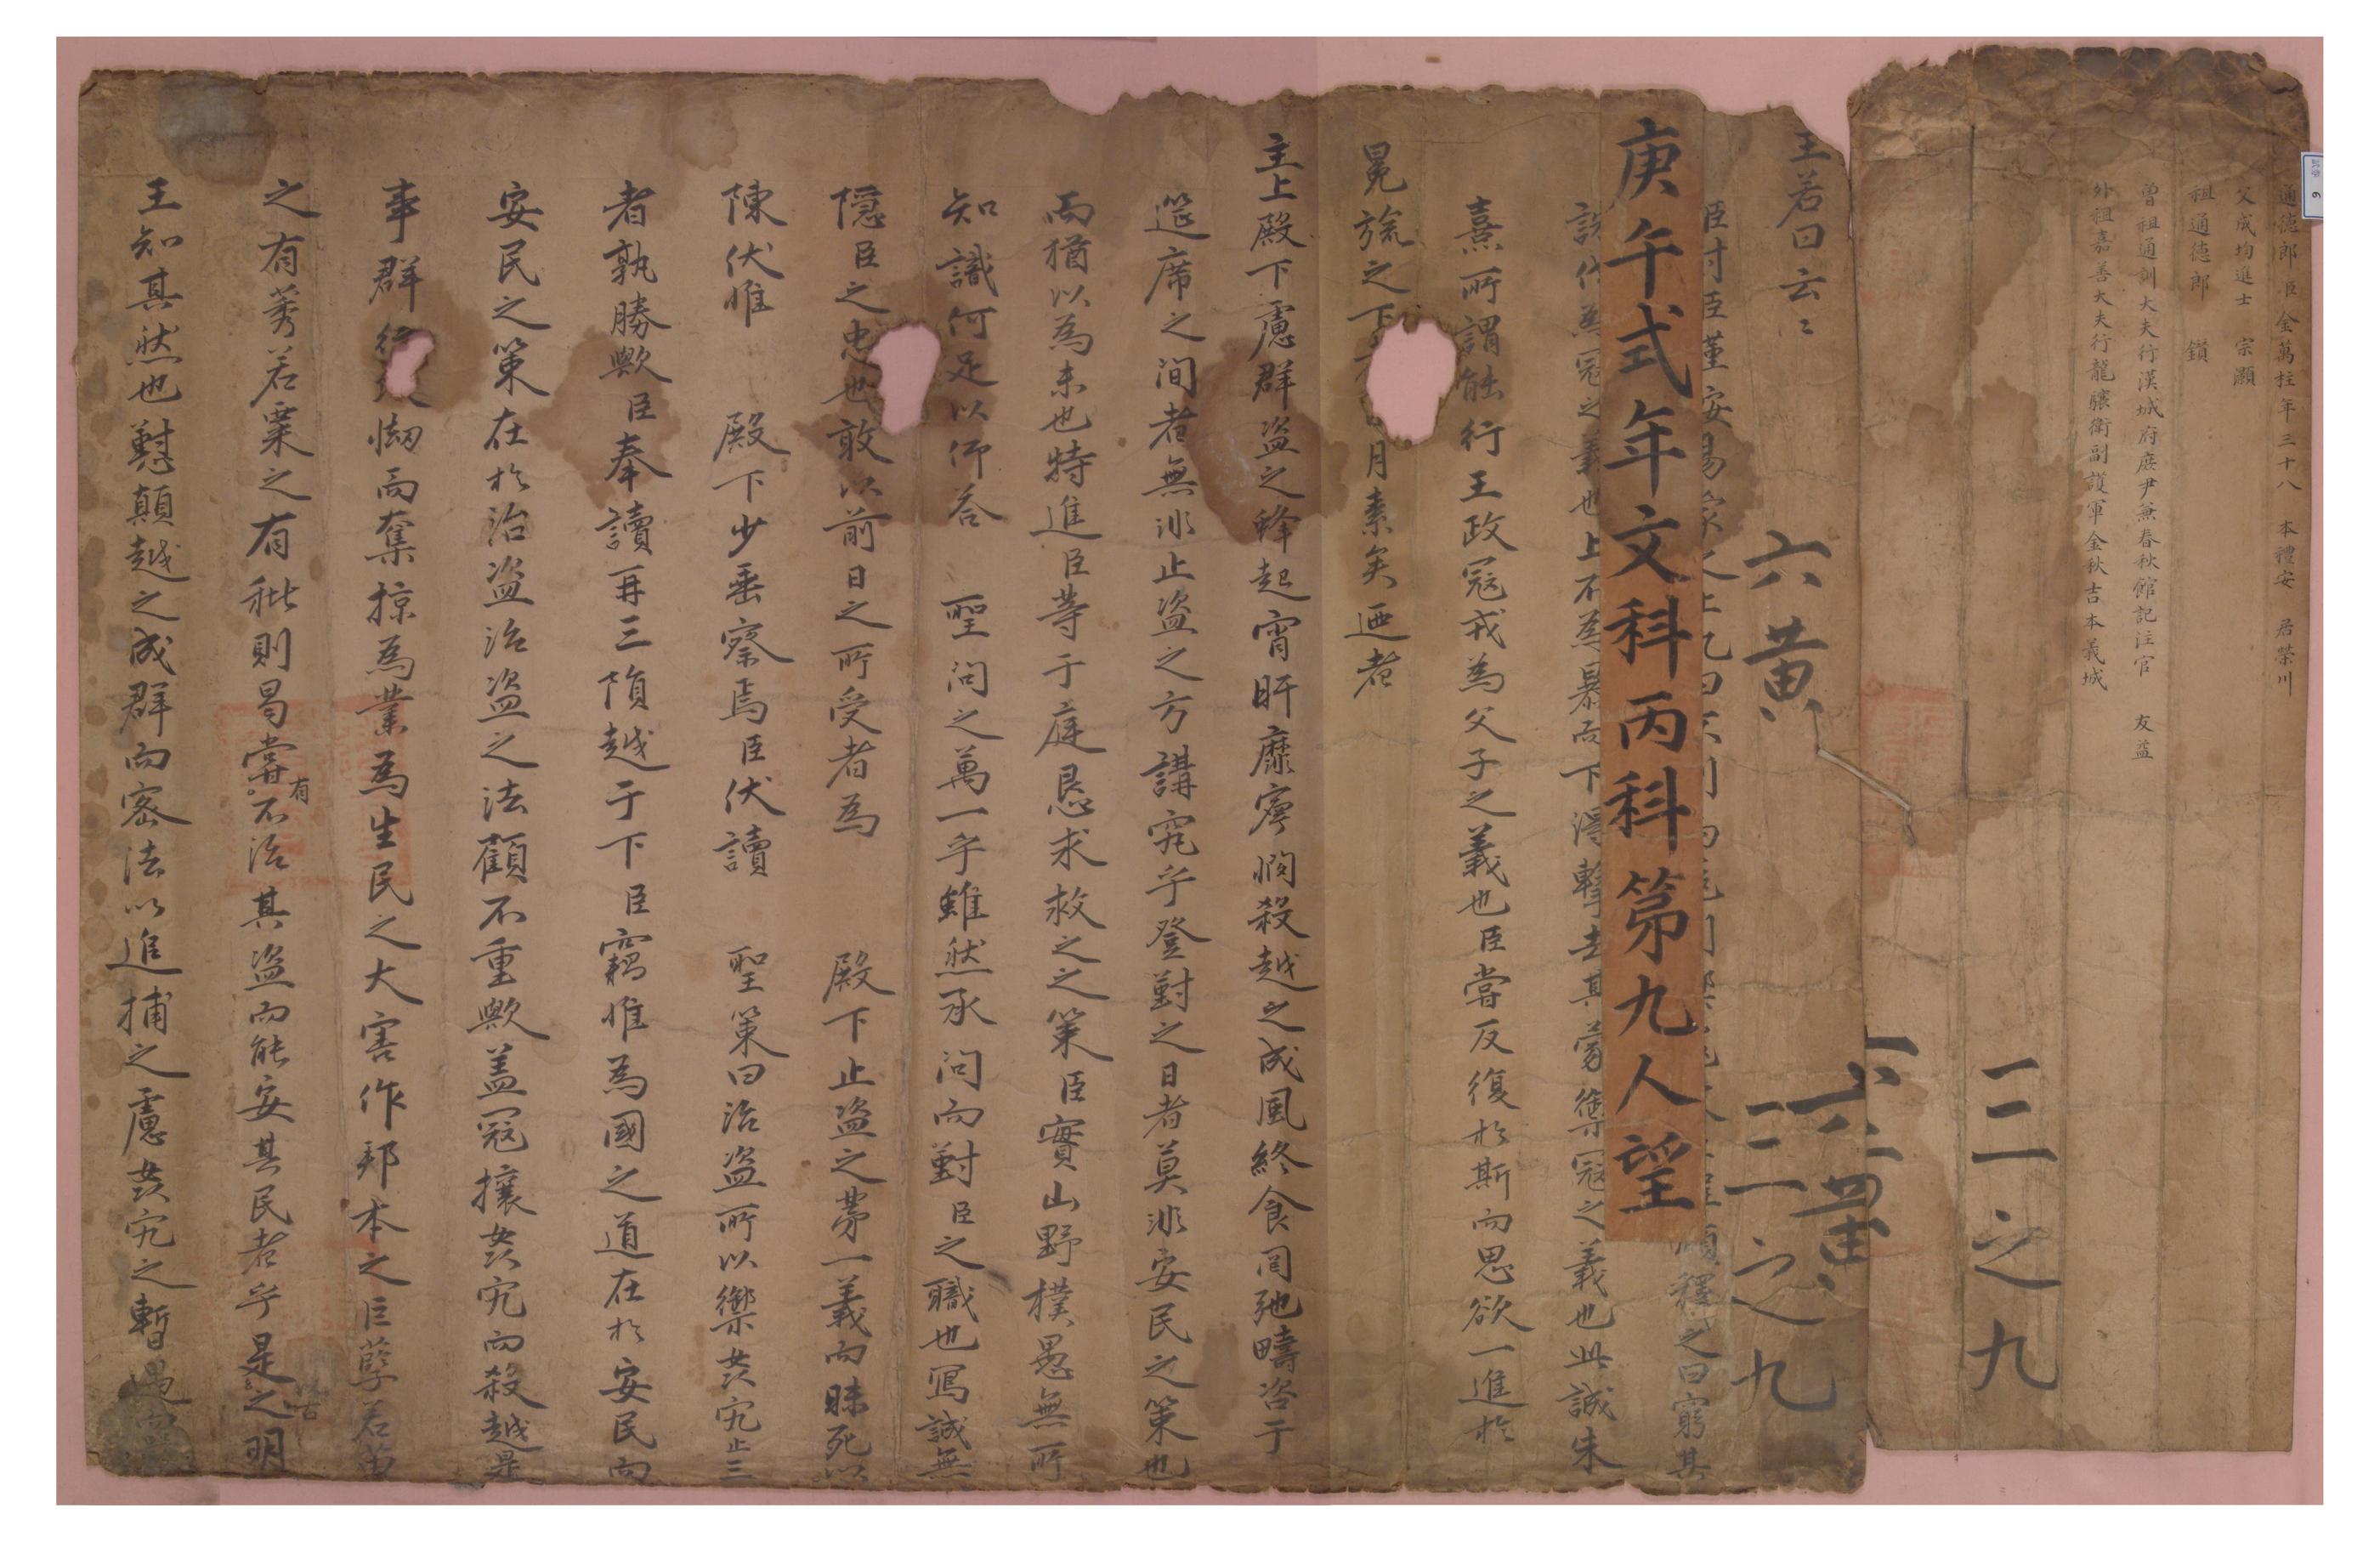 1690년 김만주가 치른 식년시 문과의 답안지로 사용한 명지